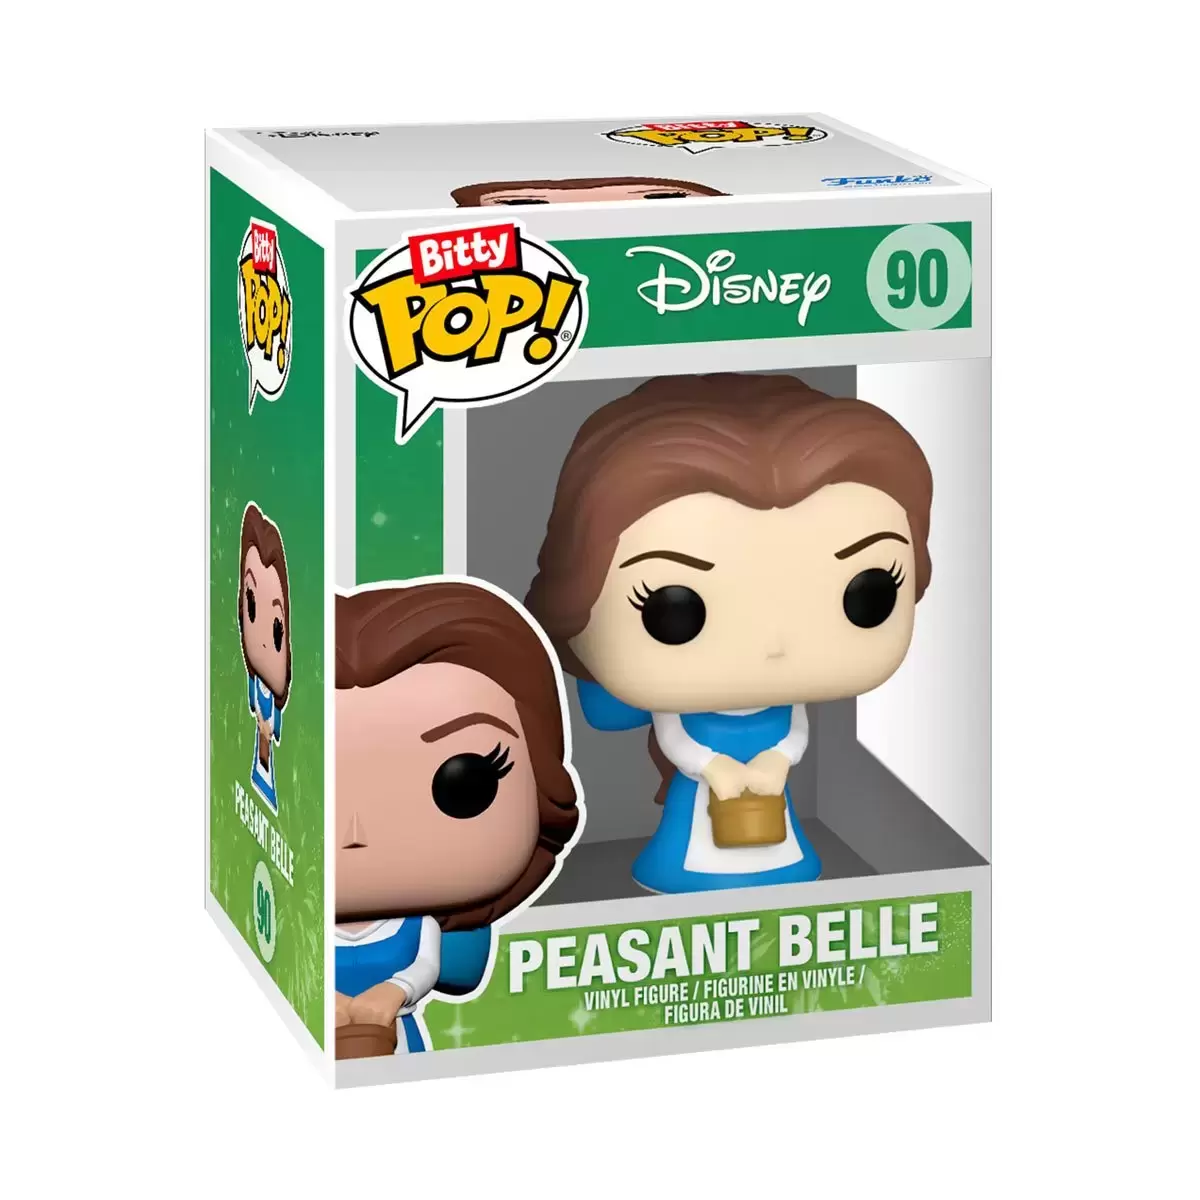 Disney Princess - Peasant Belle - Bitty POP! action figure 90